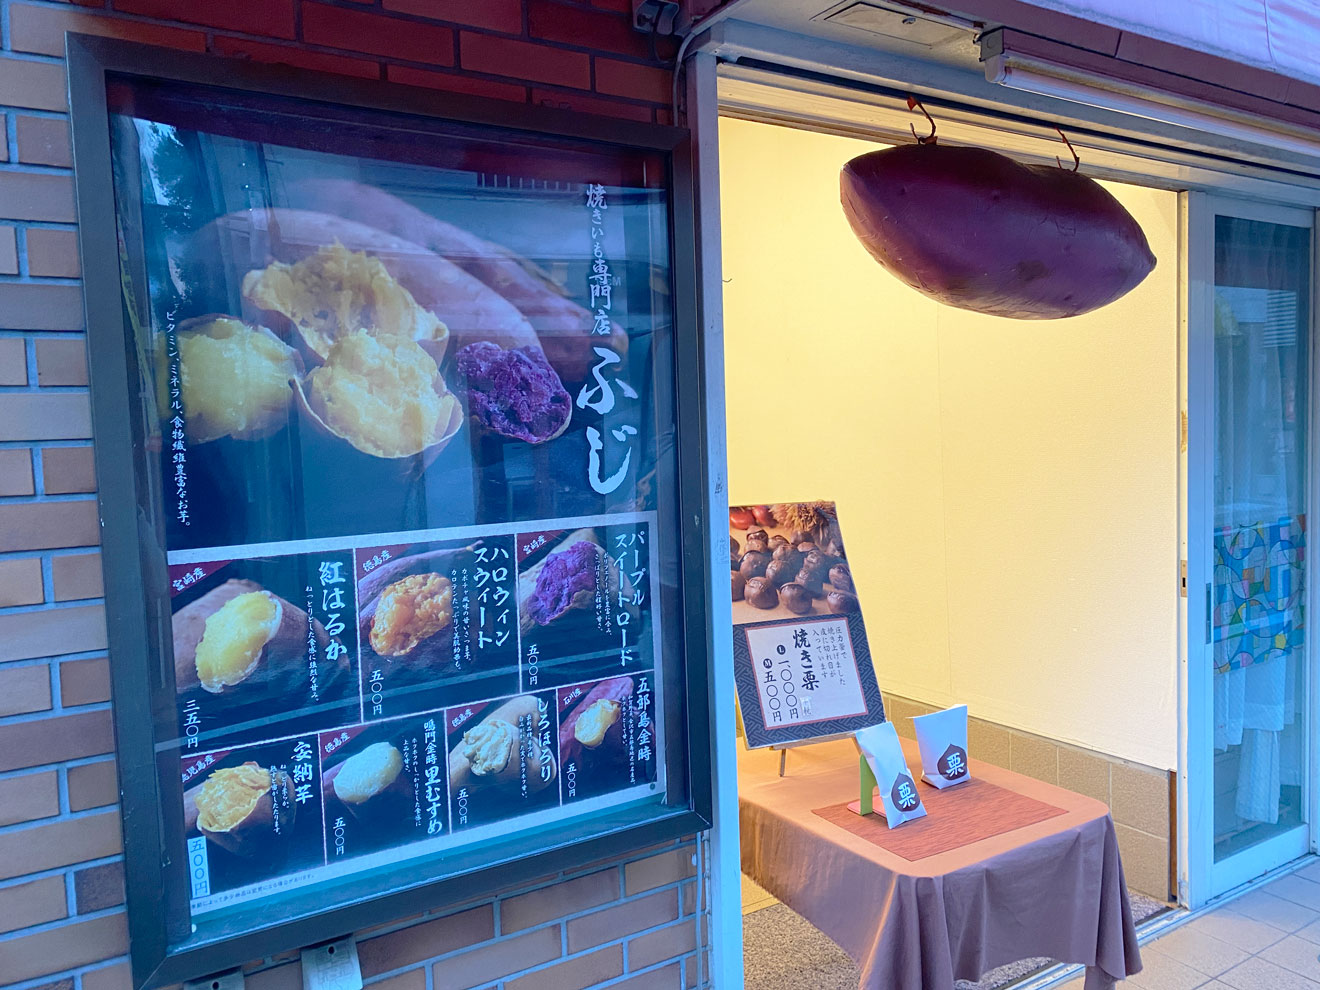 「焼き芋専門店 ふじ」の入口